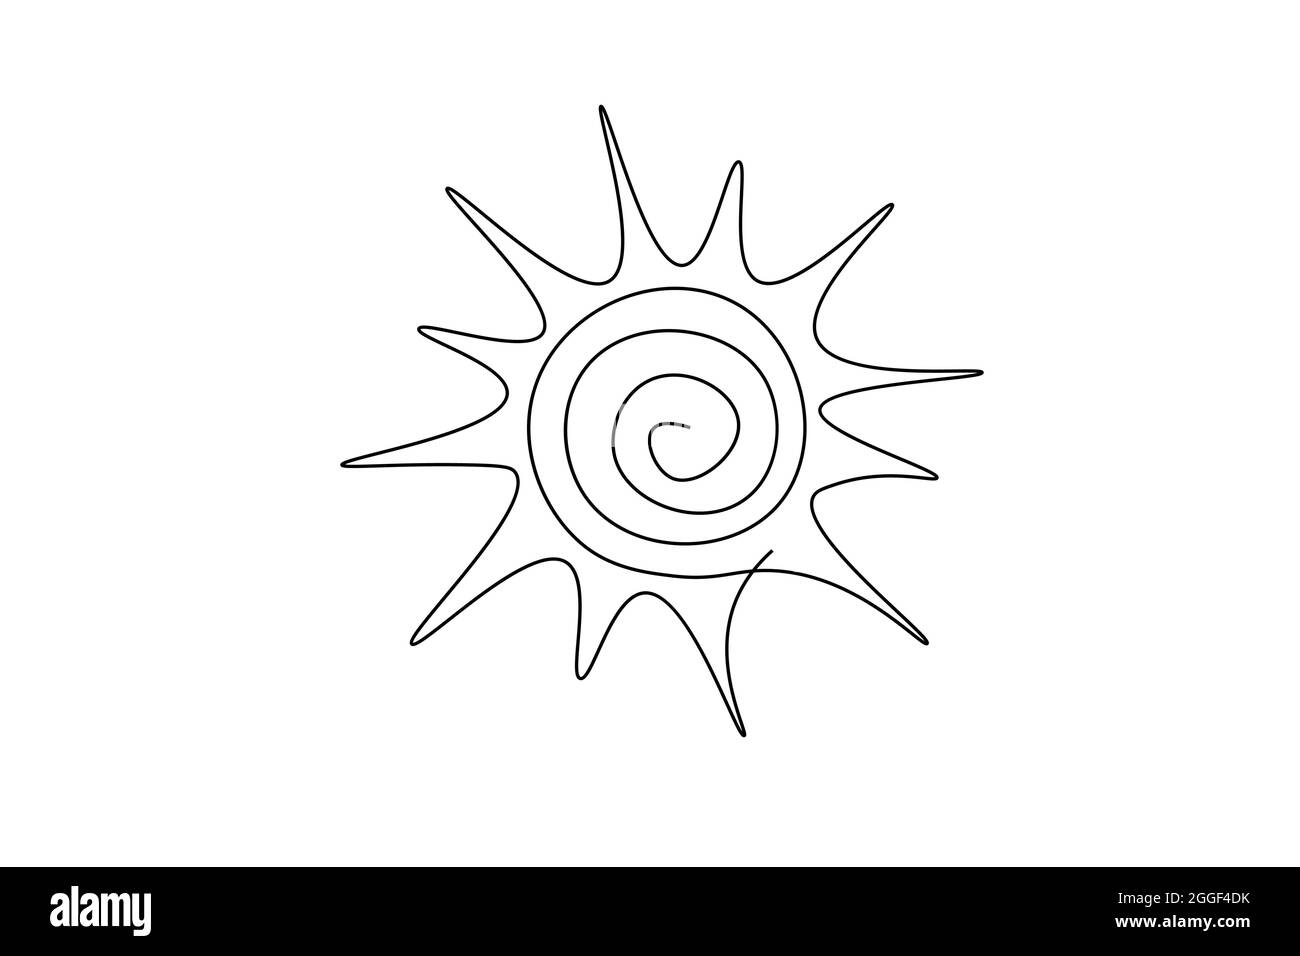 Durchgehende Linie Sonne Kunst. Einzeilige Skizze sonnigen Sommer Reise-Konzept. Symbol heiß hell Himmel Wetter glücklich Urlaub Element Vektor Stock Vektor